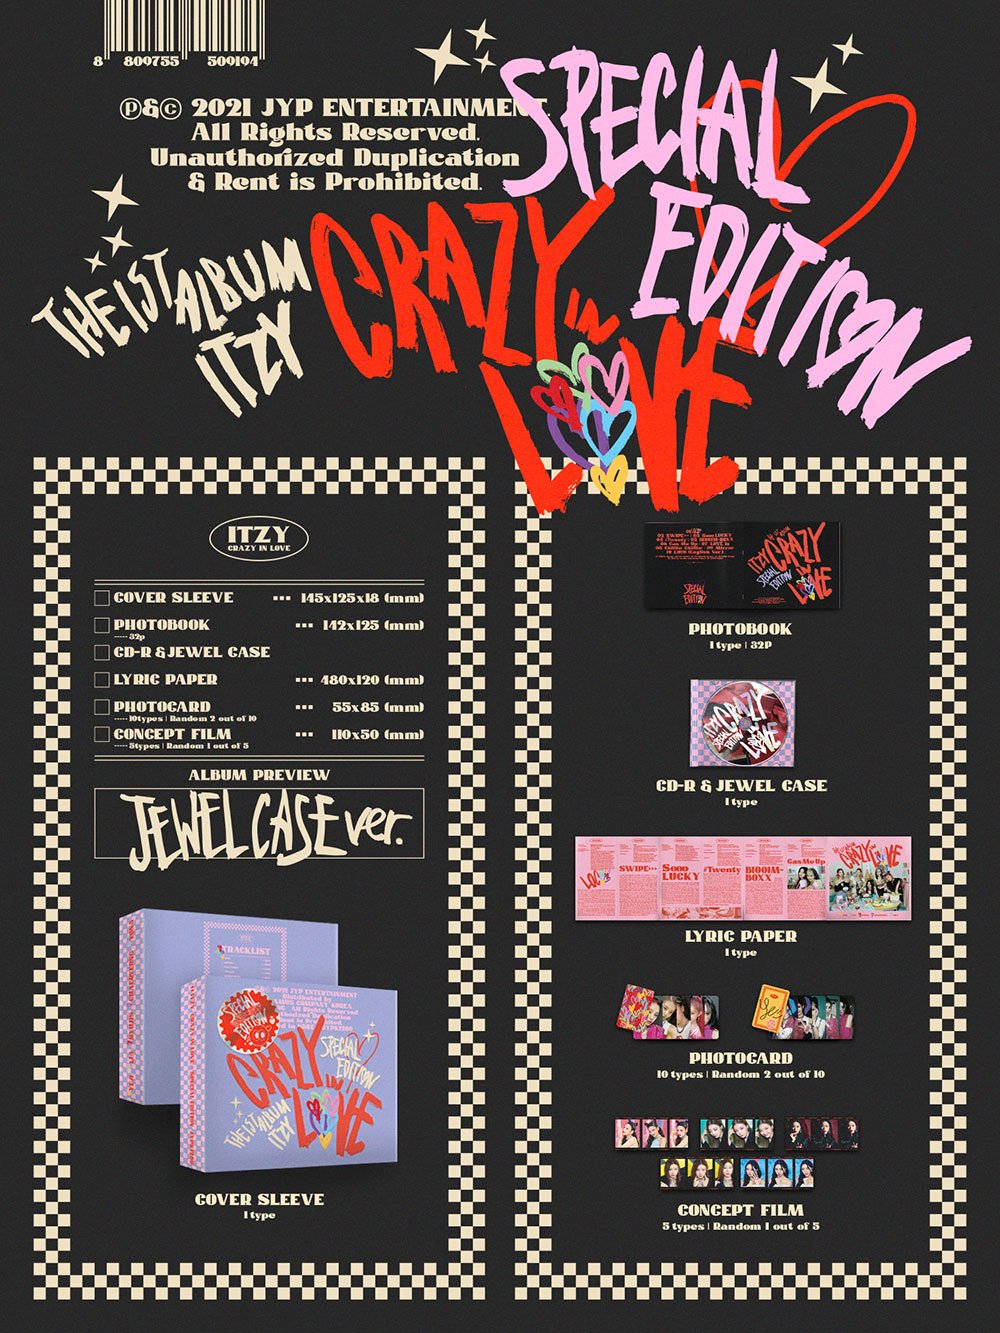 ITZY Vol. 1 - CRAZY IN LOVE Special Edition (Jewel Case Version)